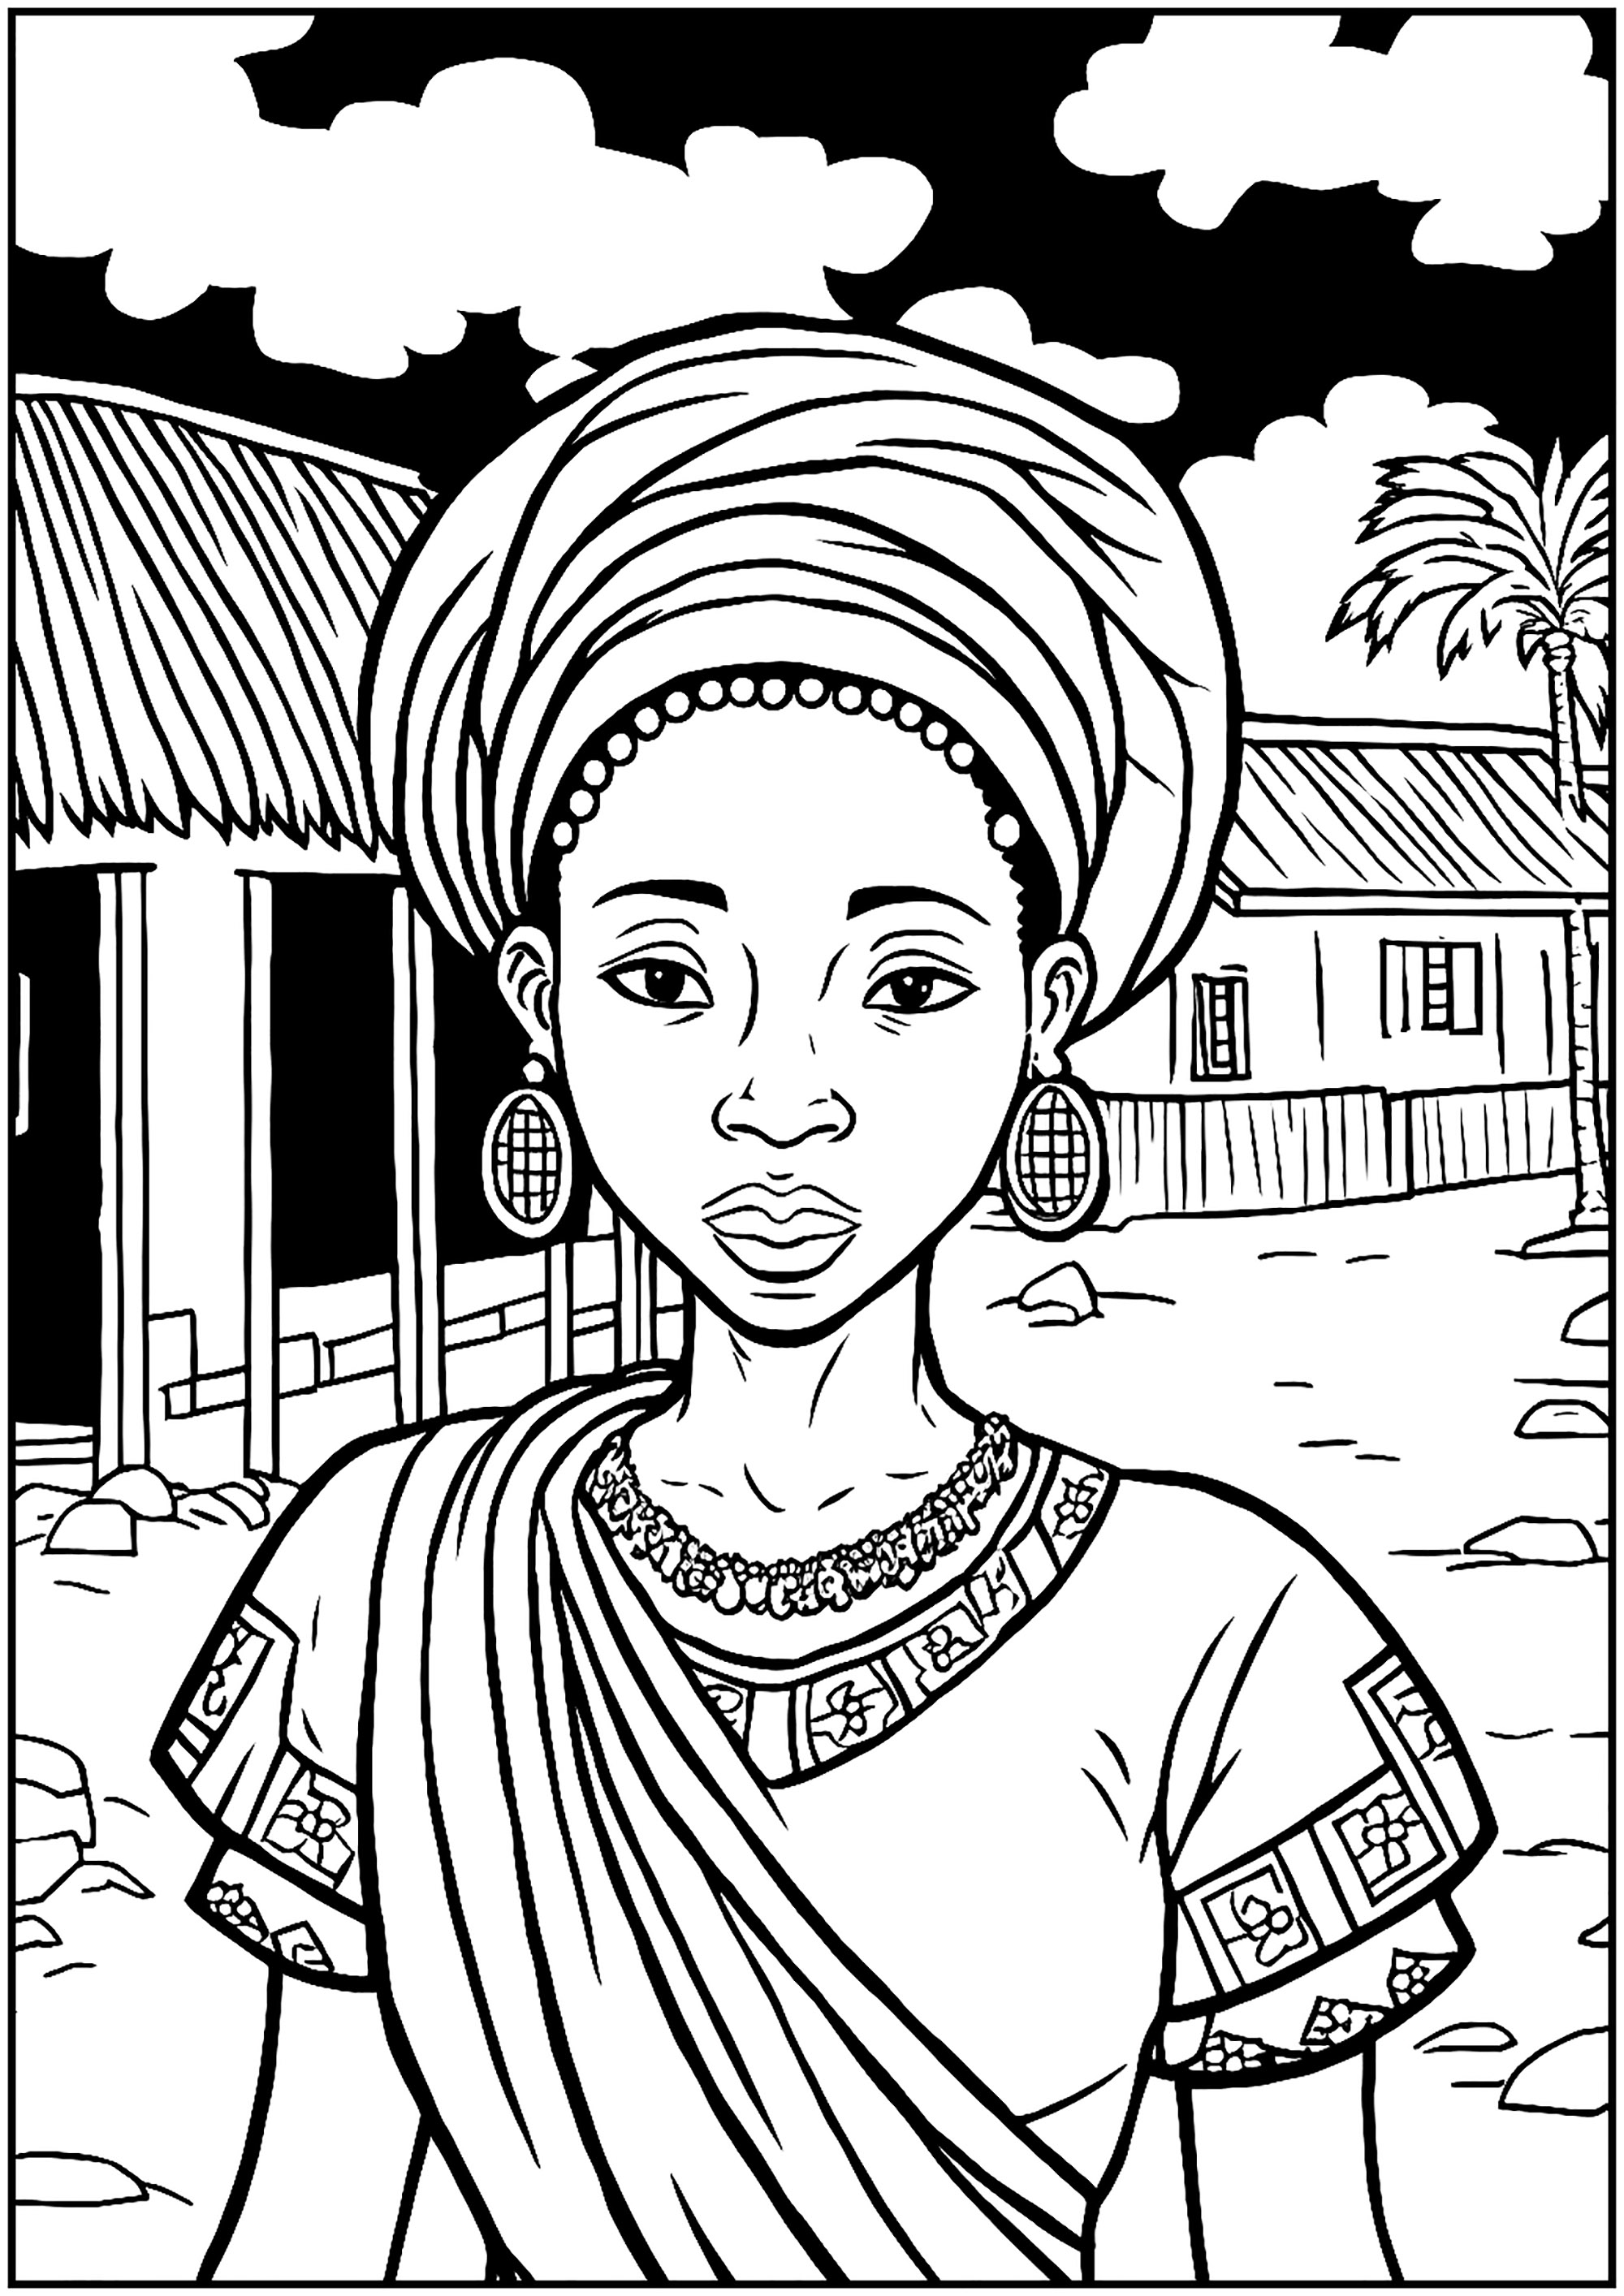 Precioso colorido de una mujer en su aldea de África